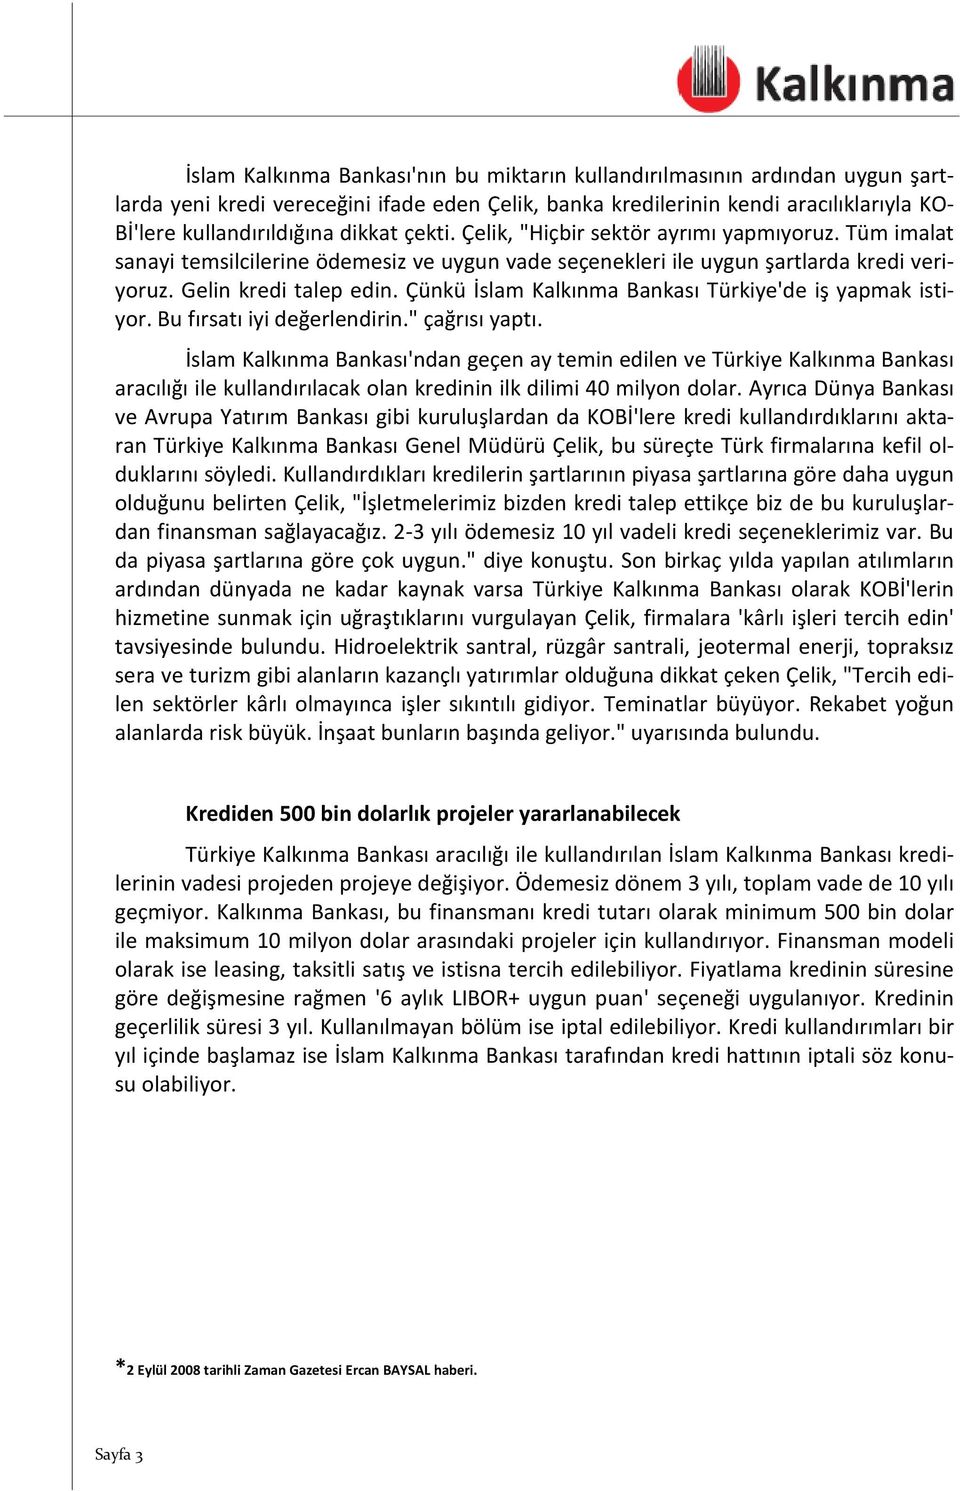 Çünkü İslam Kalkınma Bankası Türkiye'de iş yapmak istiyor. Bu fırsatı iyi değerlendirin." çağrısı yaptı.